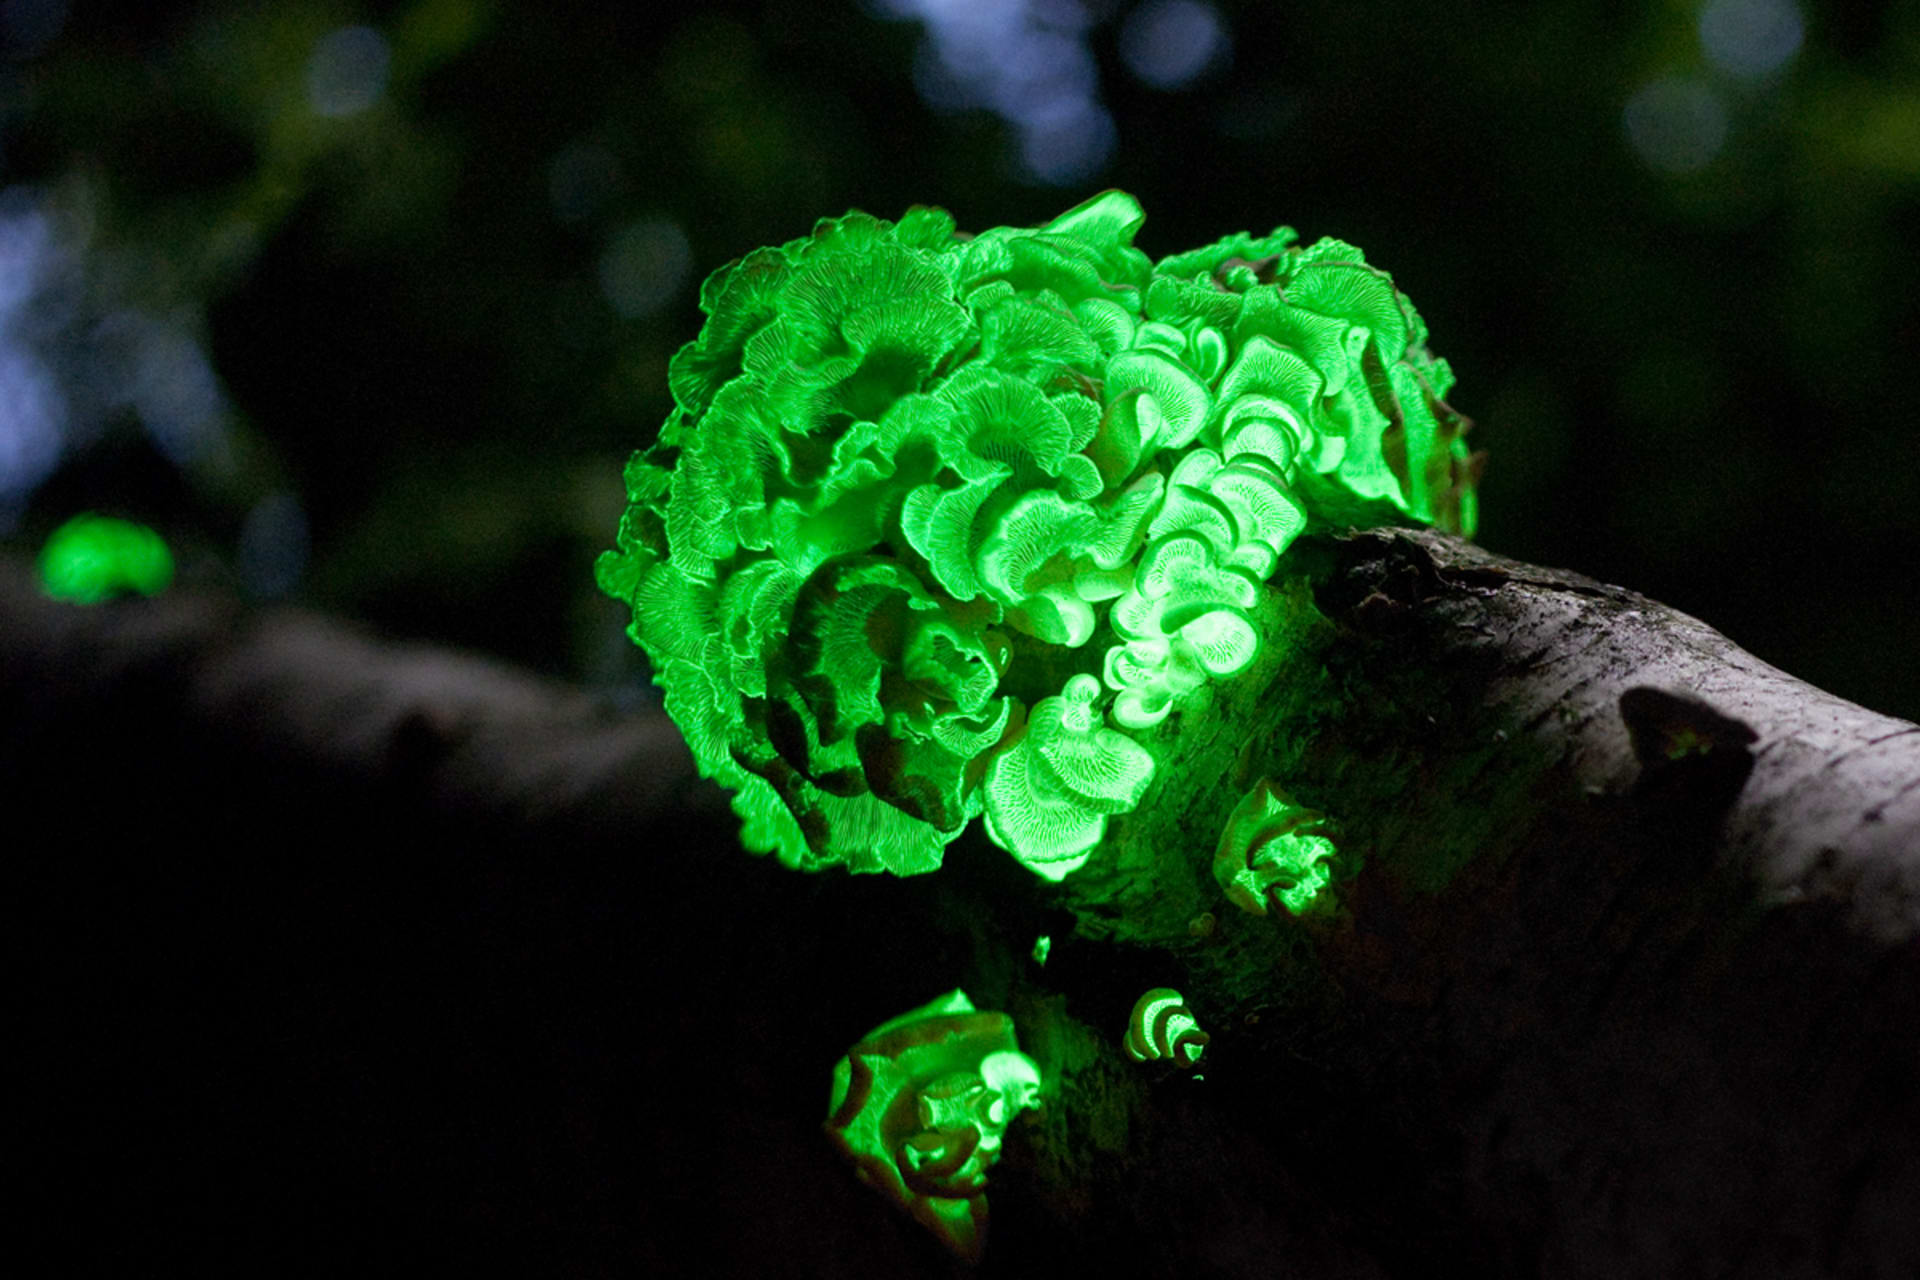 pařezník obecný, houba zvládající bioluminoscenci